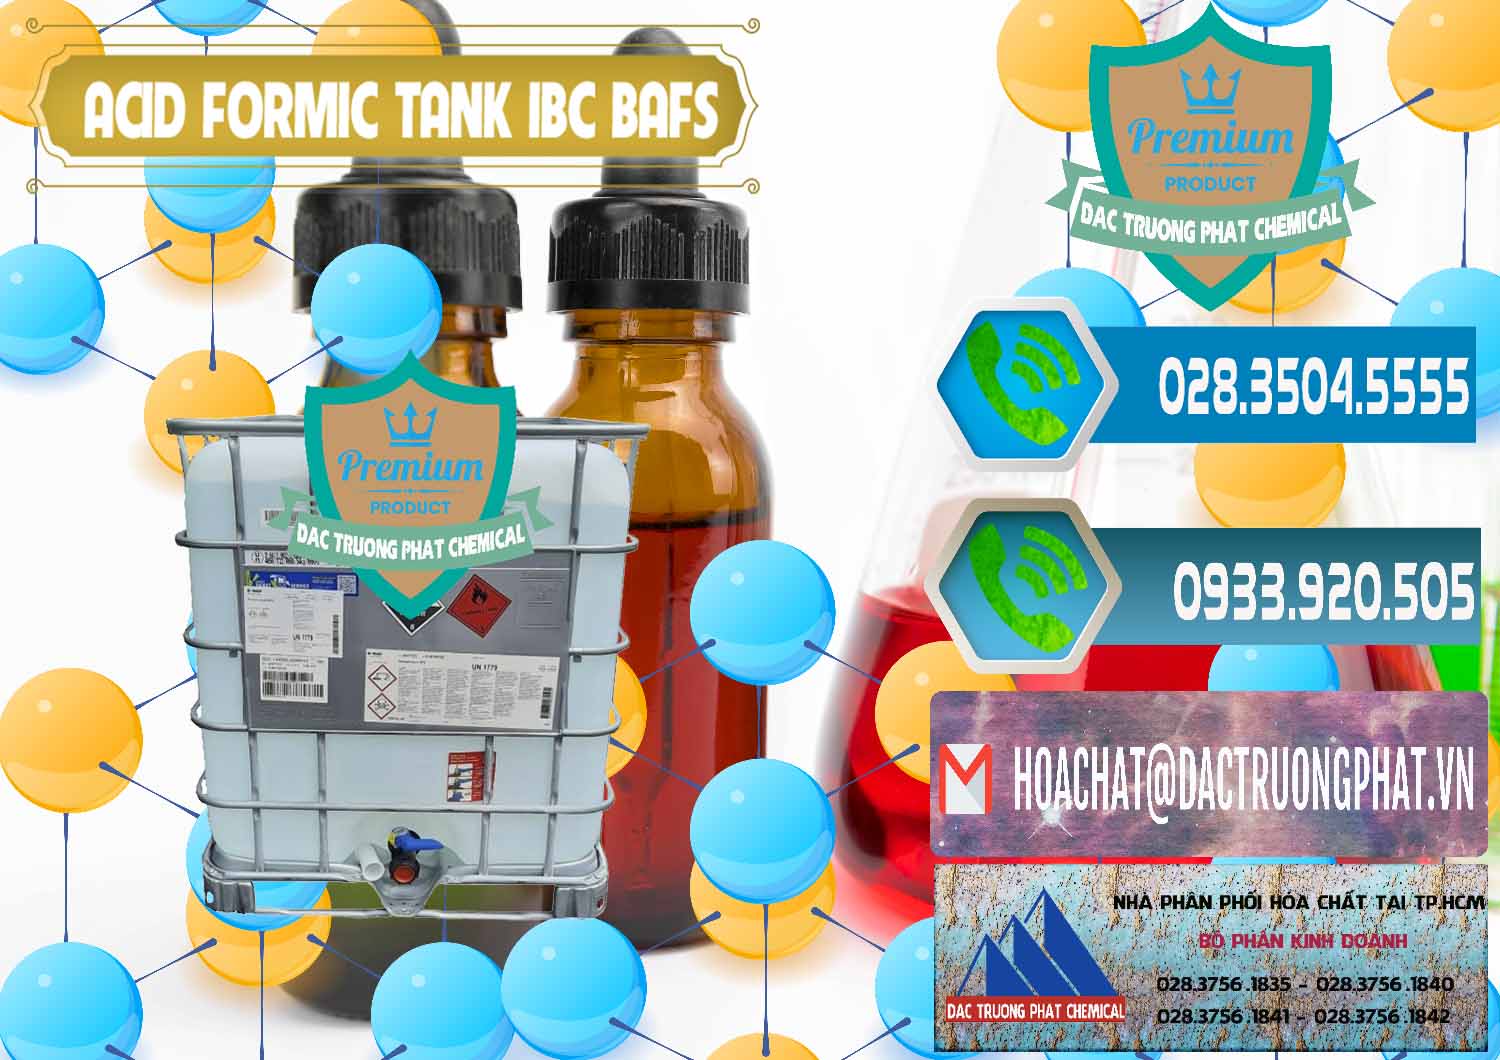 Cty bán & cung cấp Acid Formic - Axit Formic Tank - Bồn IBC BASF Đức - 0366 - Công ty cung cấp - nhập khẩu hóa chất tại TP.HCM - congtyhoachat.net